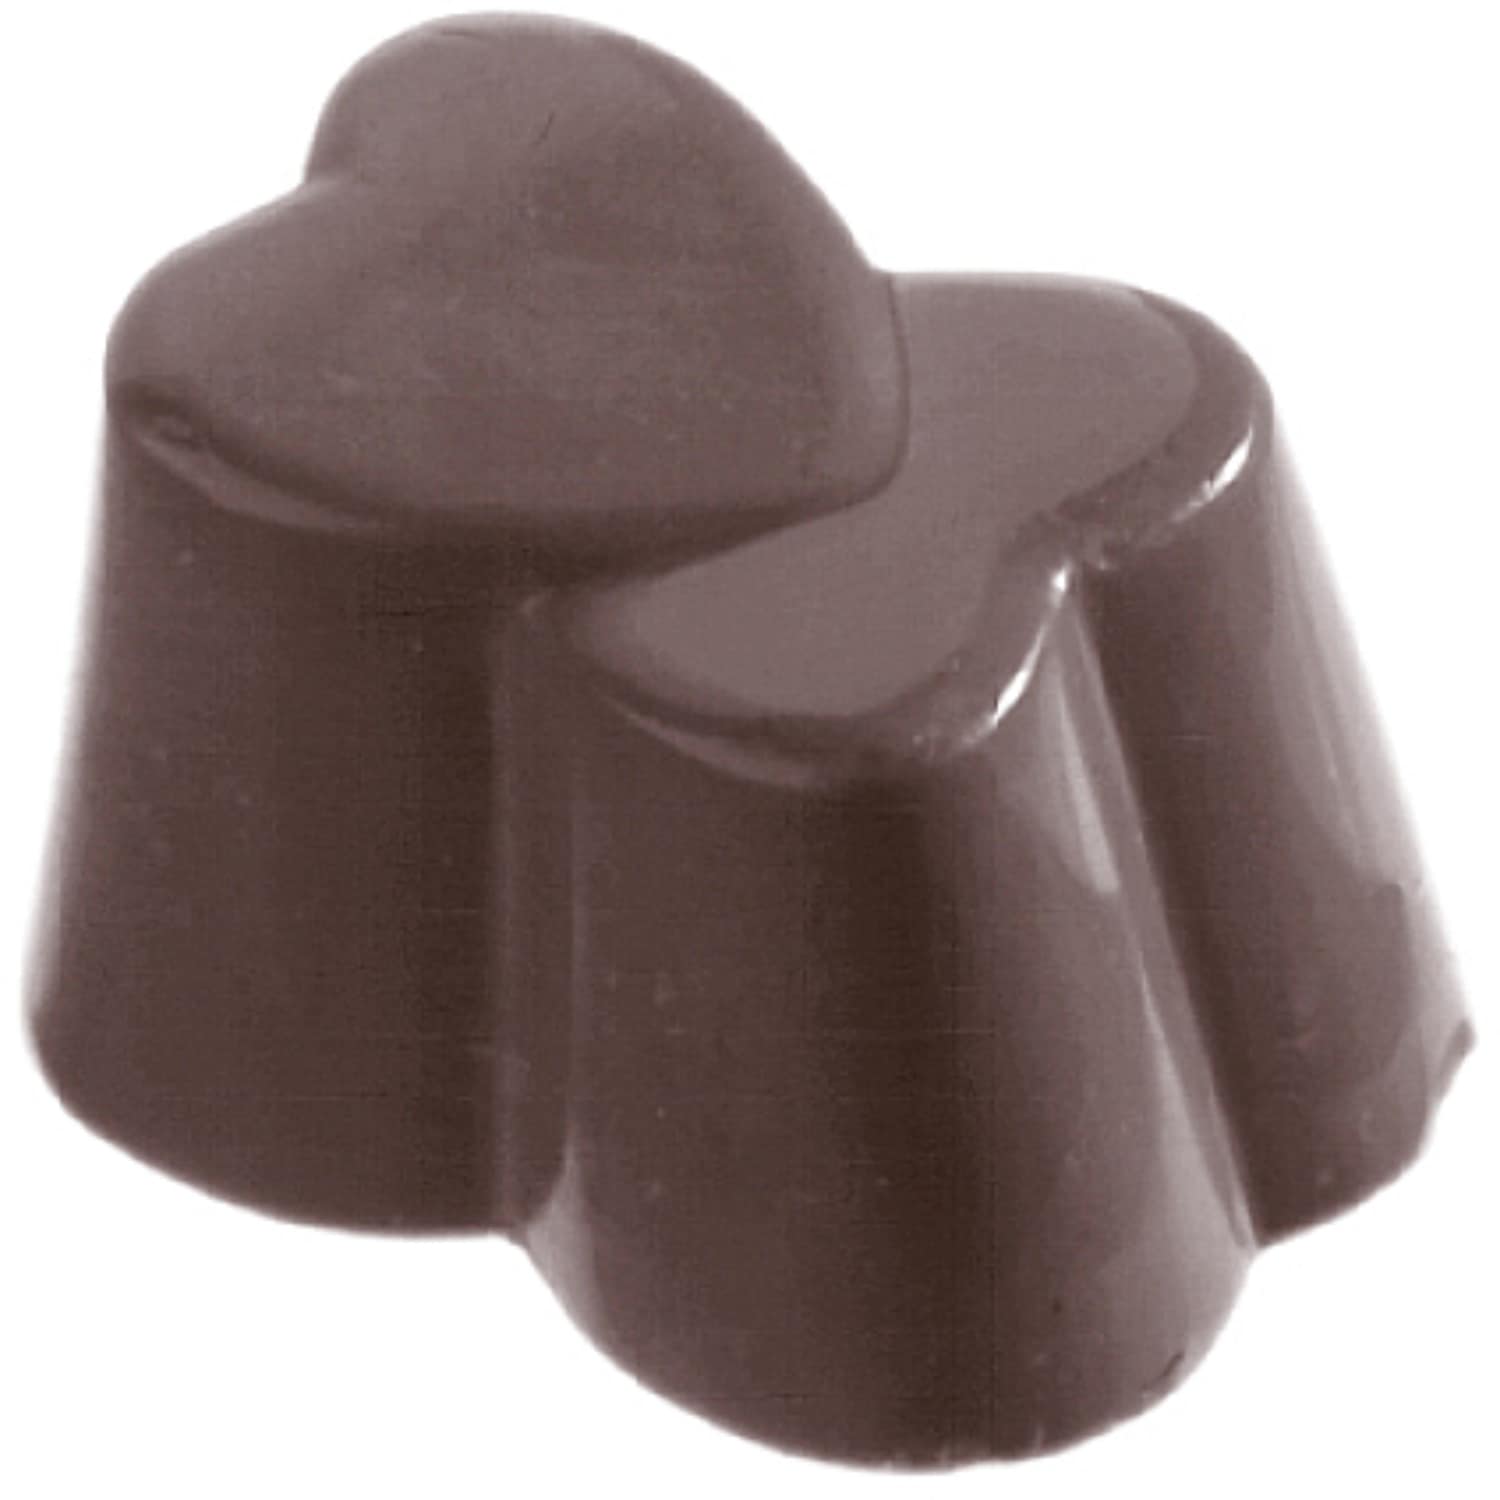 Schokoladenform "Doppelherz" 421023 421023